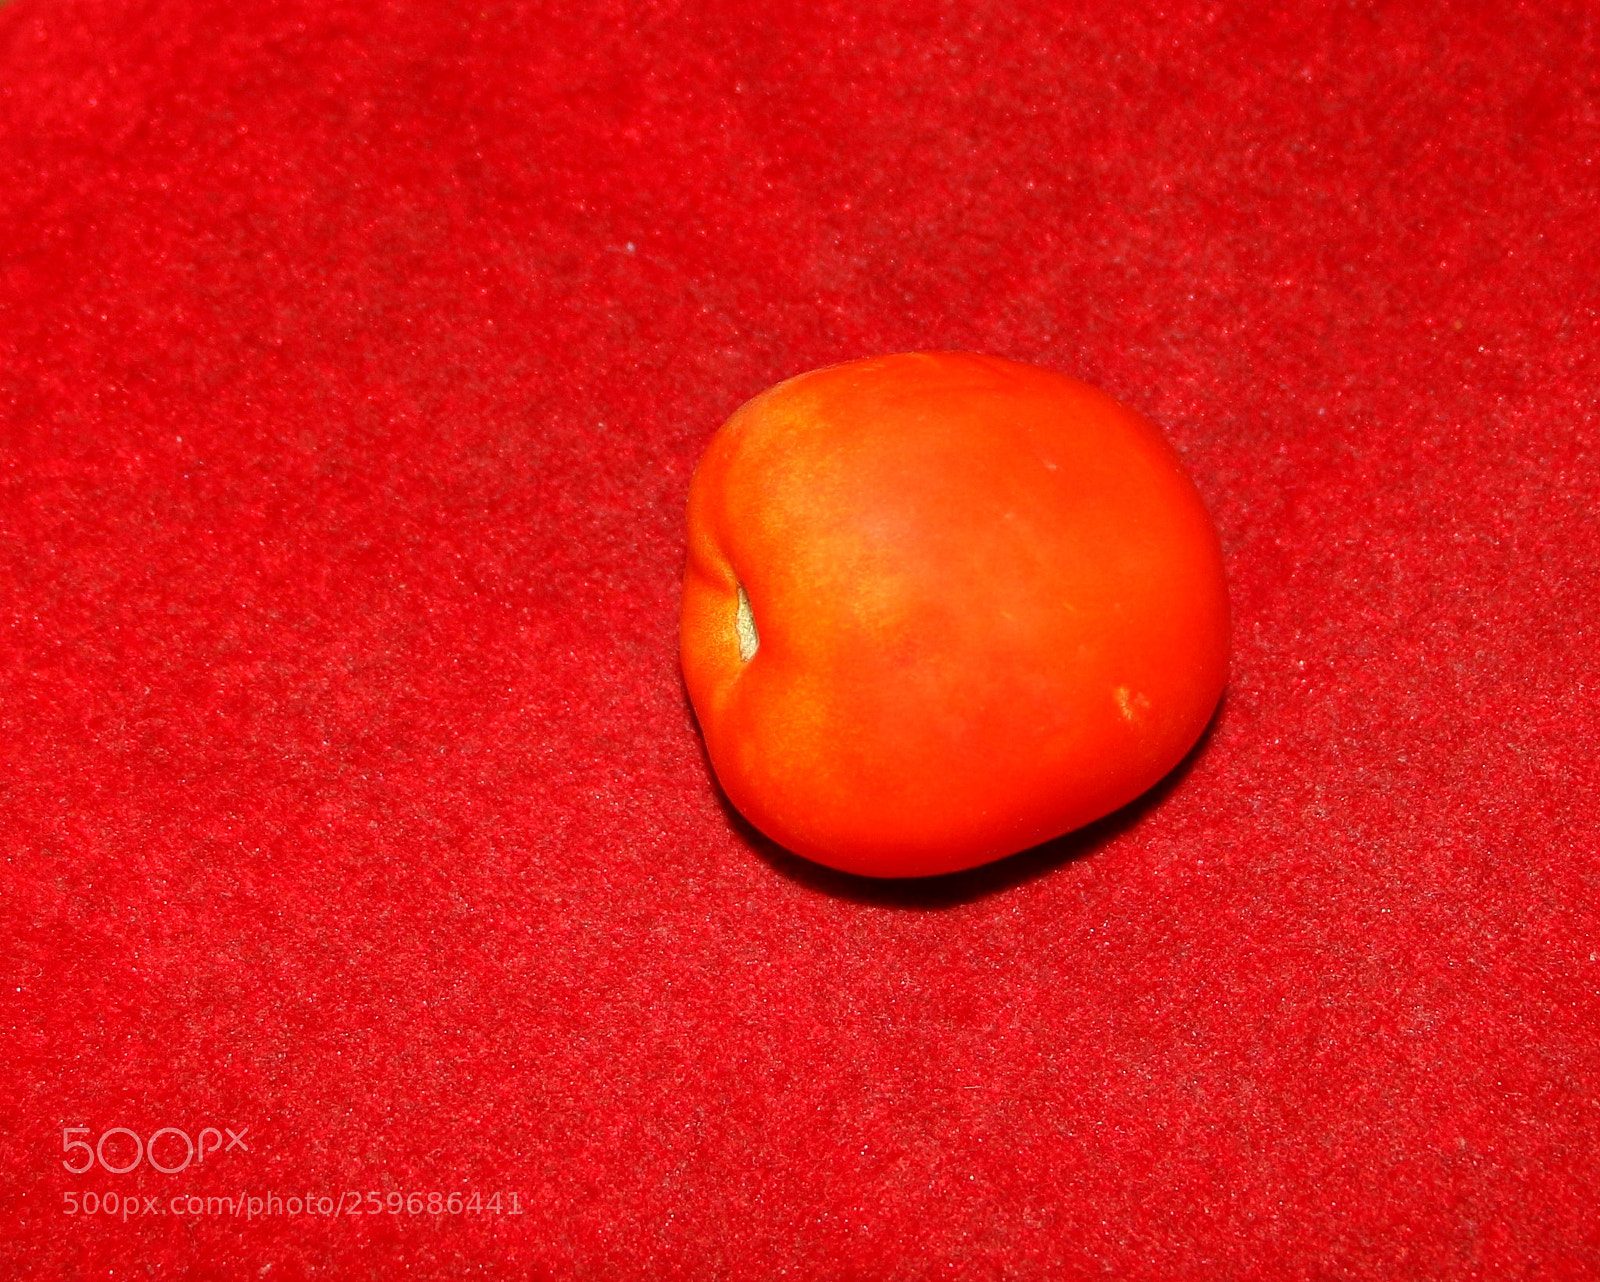 Canon EOS 70D sample photo. Tomato photography